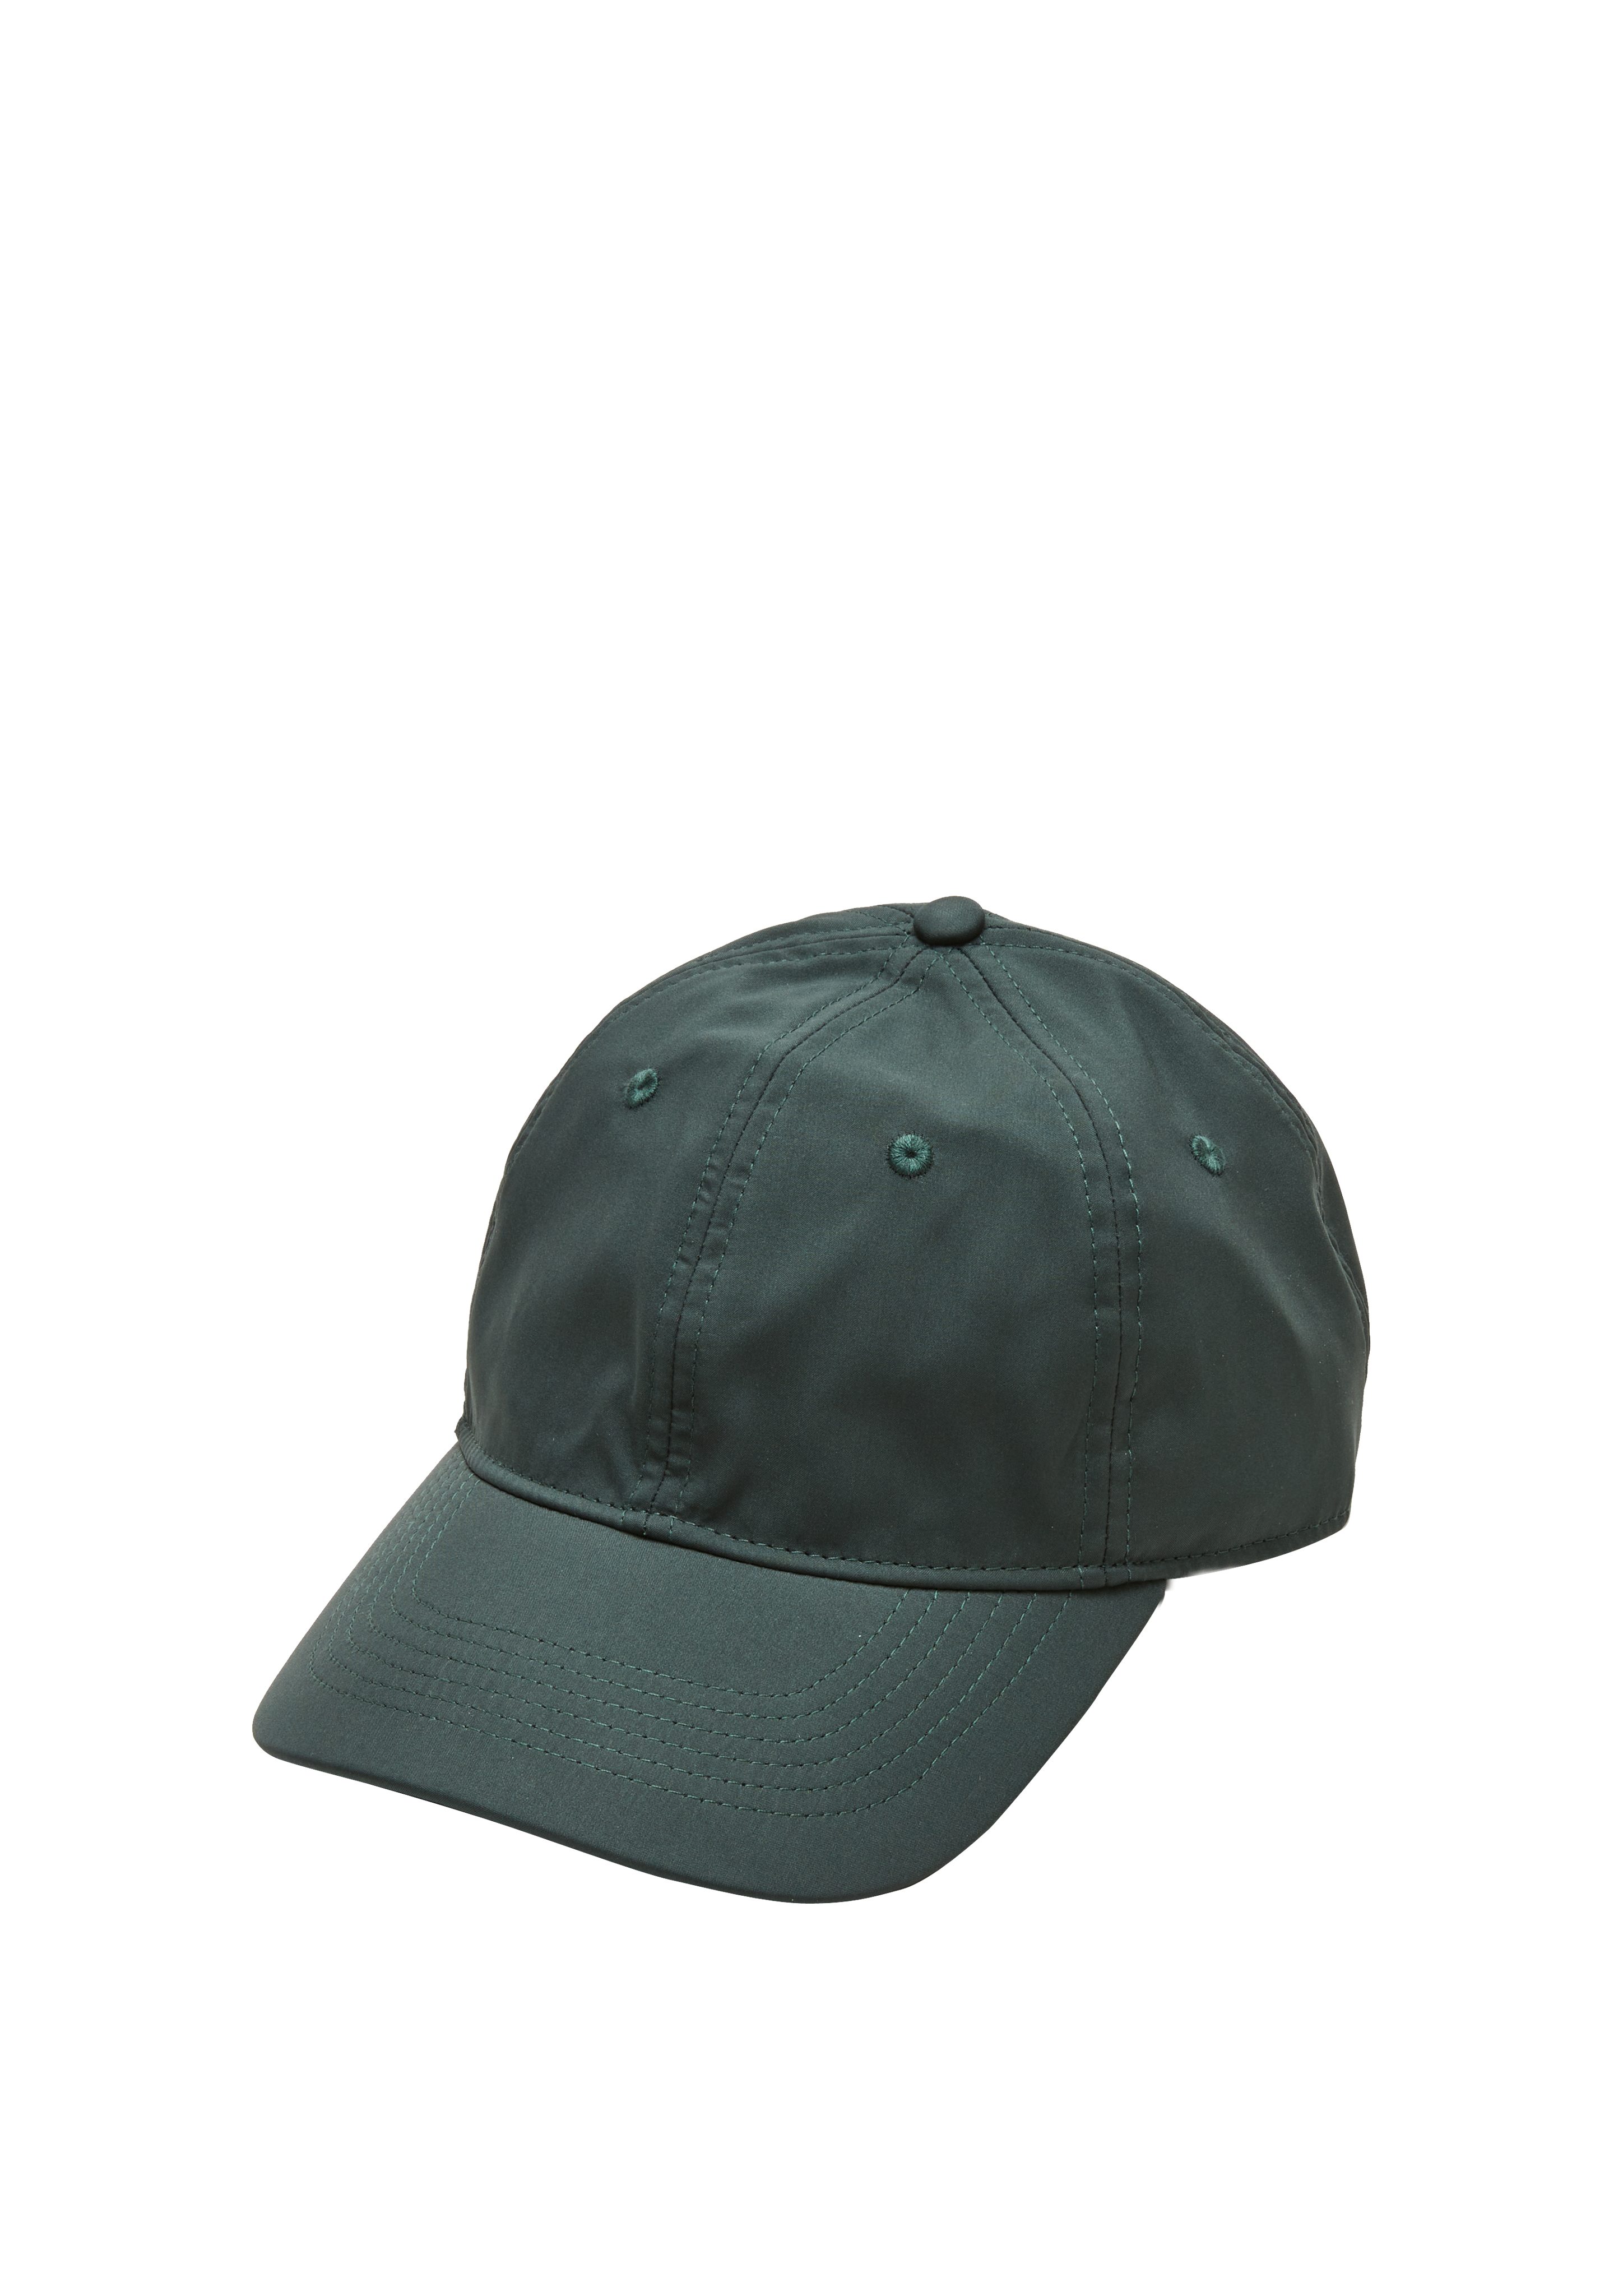 Look s.Oliver Baseball Logo Kappe Cap im cleanen olivgrün